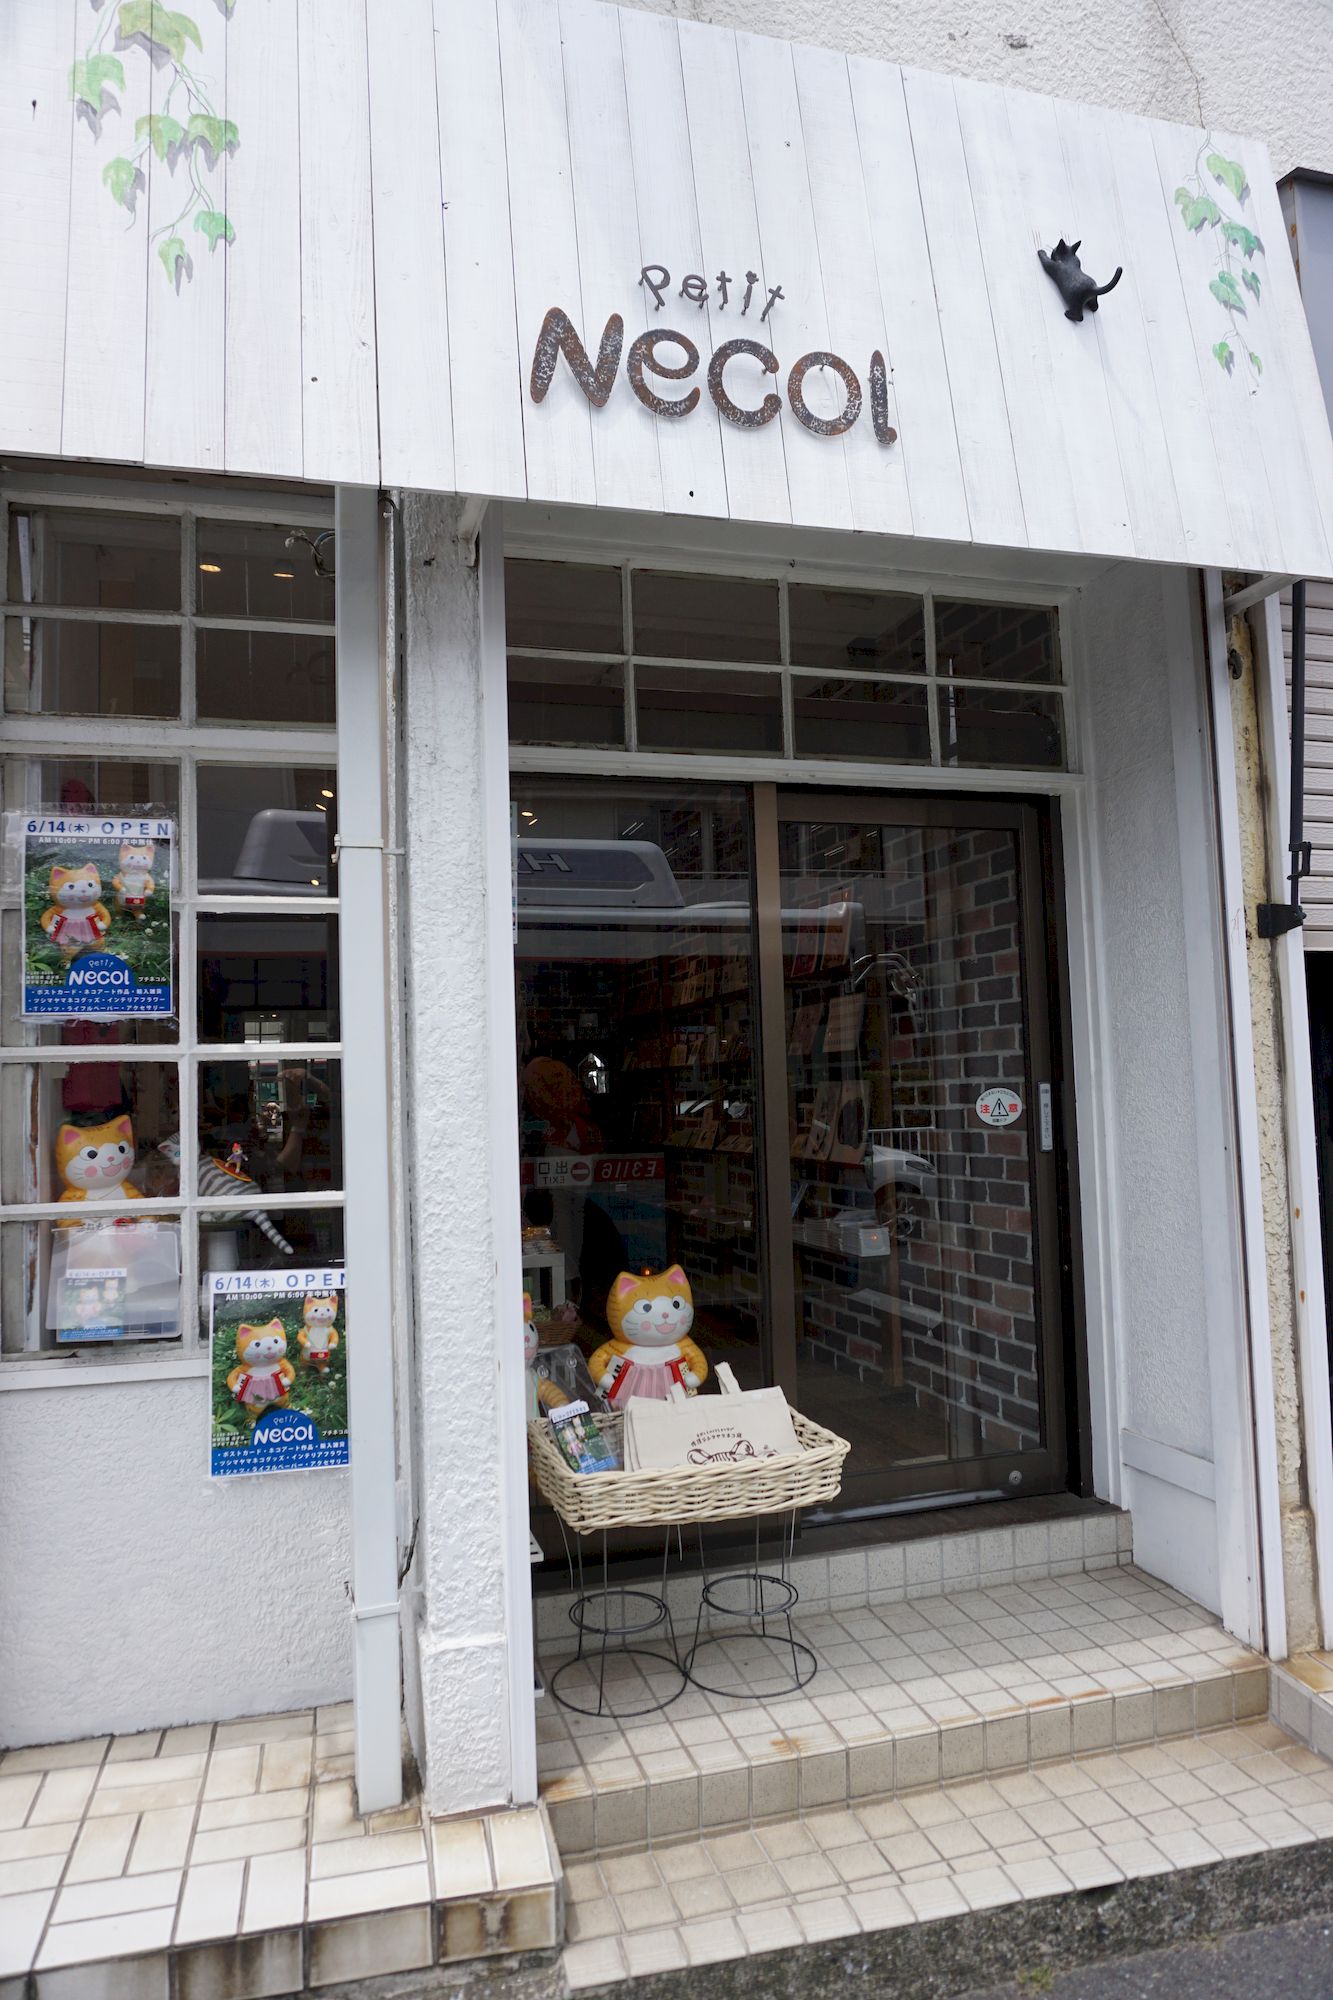 逗子に猫 好き まっしぐら な可愛いネコグッズのお店 Petit Necol が誕生 株式会社katzのプレスリリース